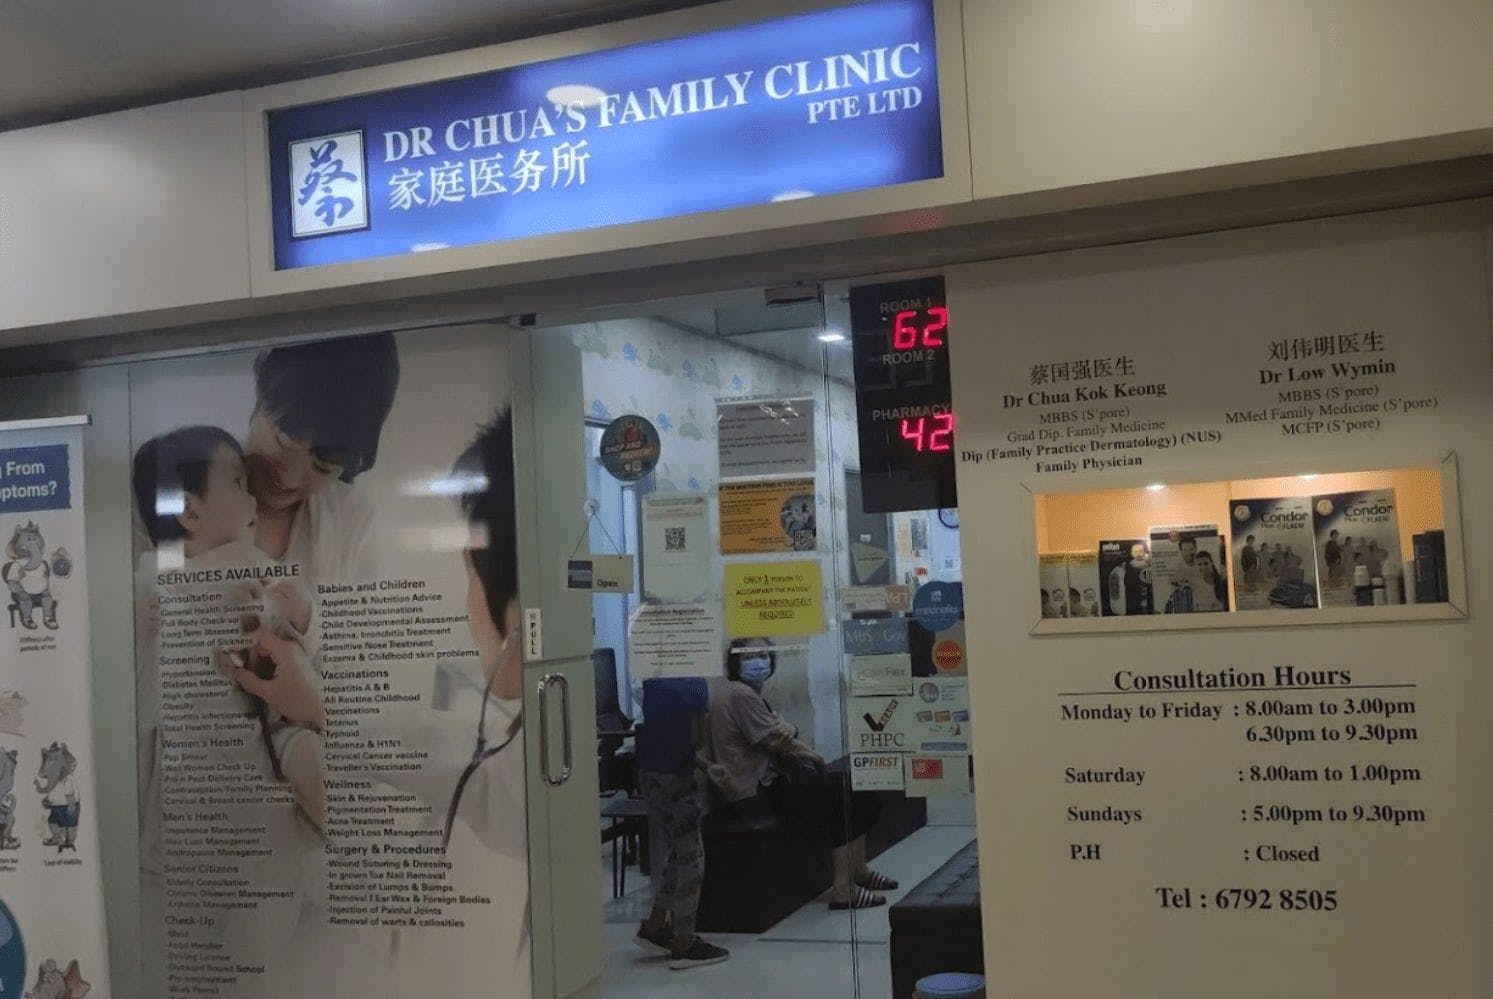 Dr. Chua's Family Clinic Pte Ltd